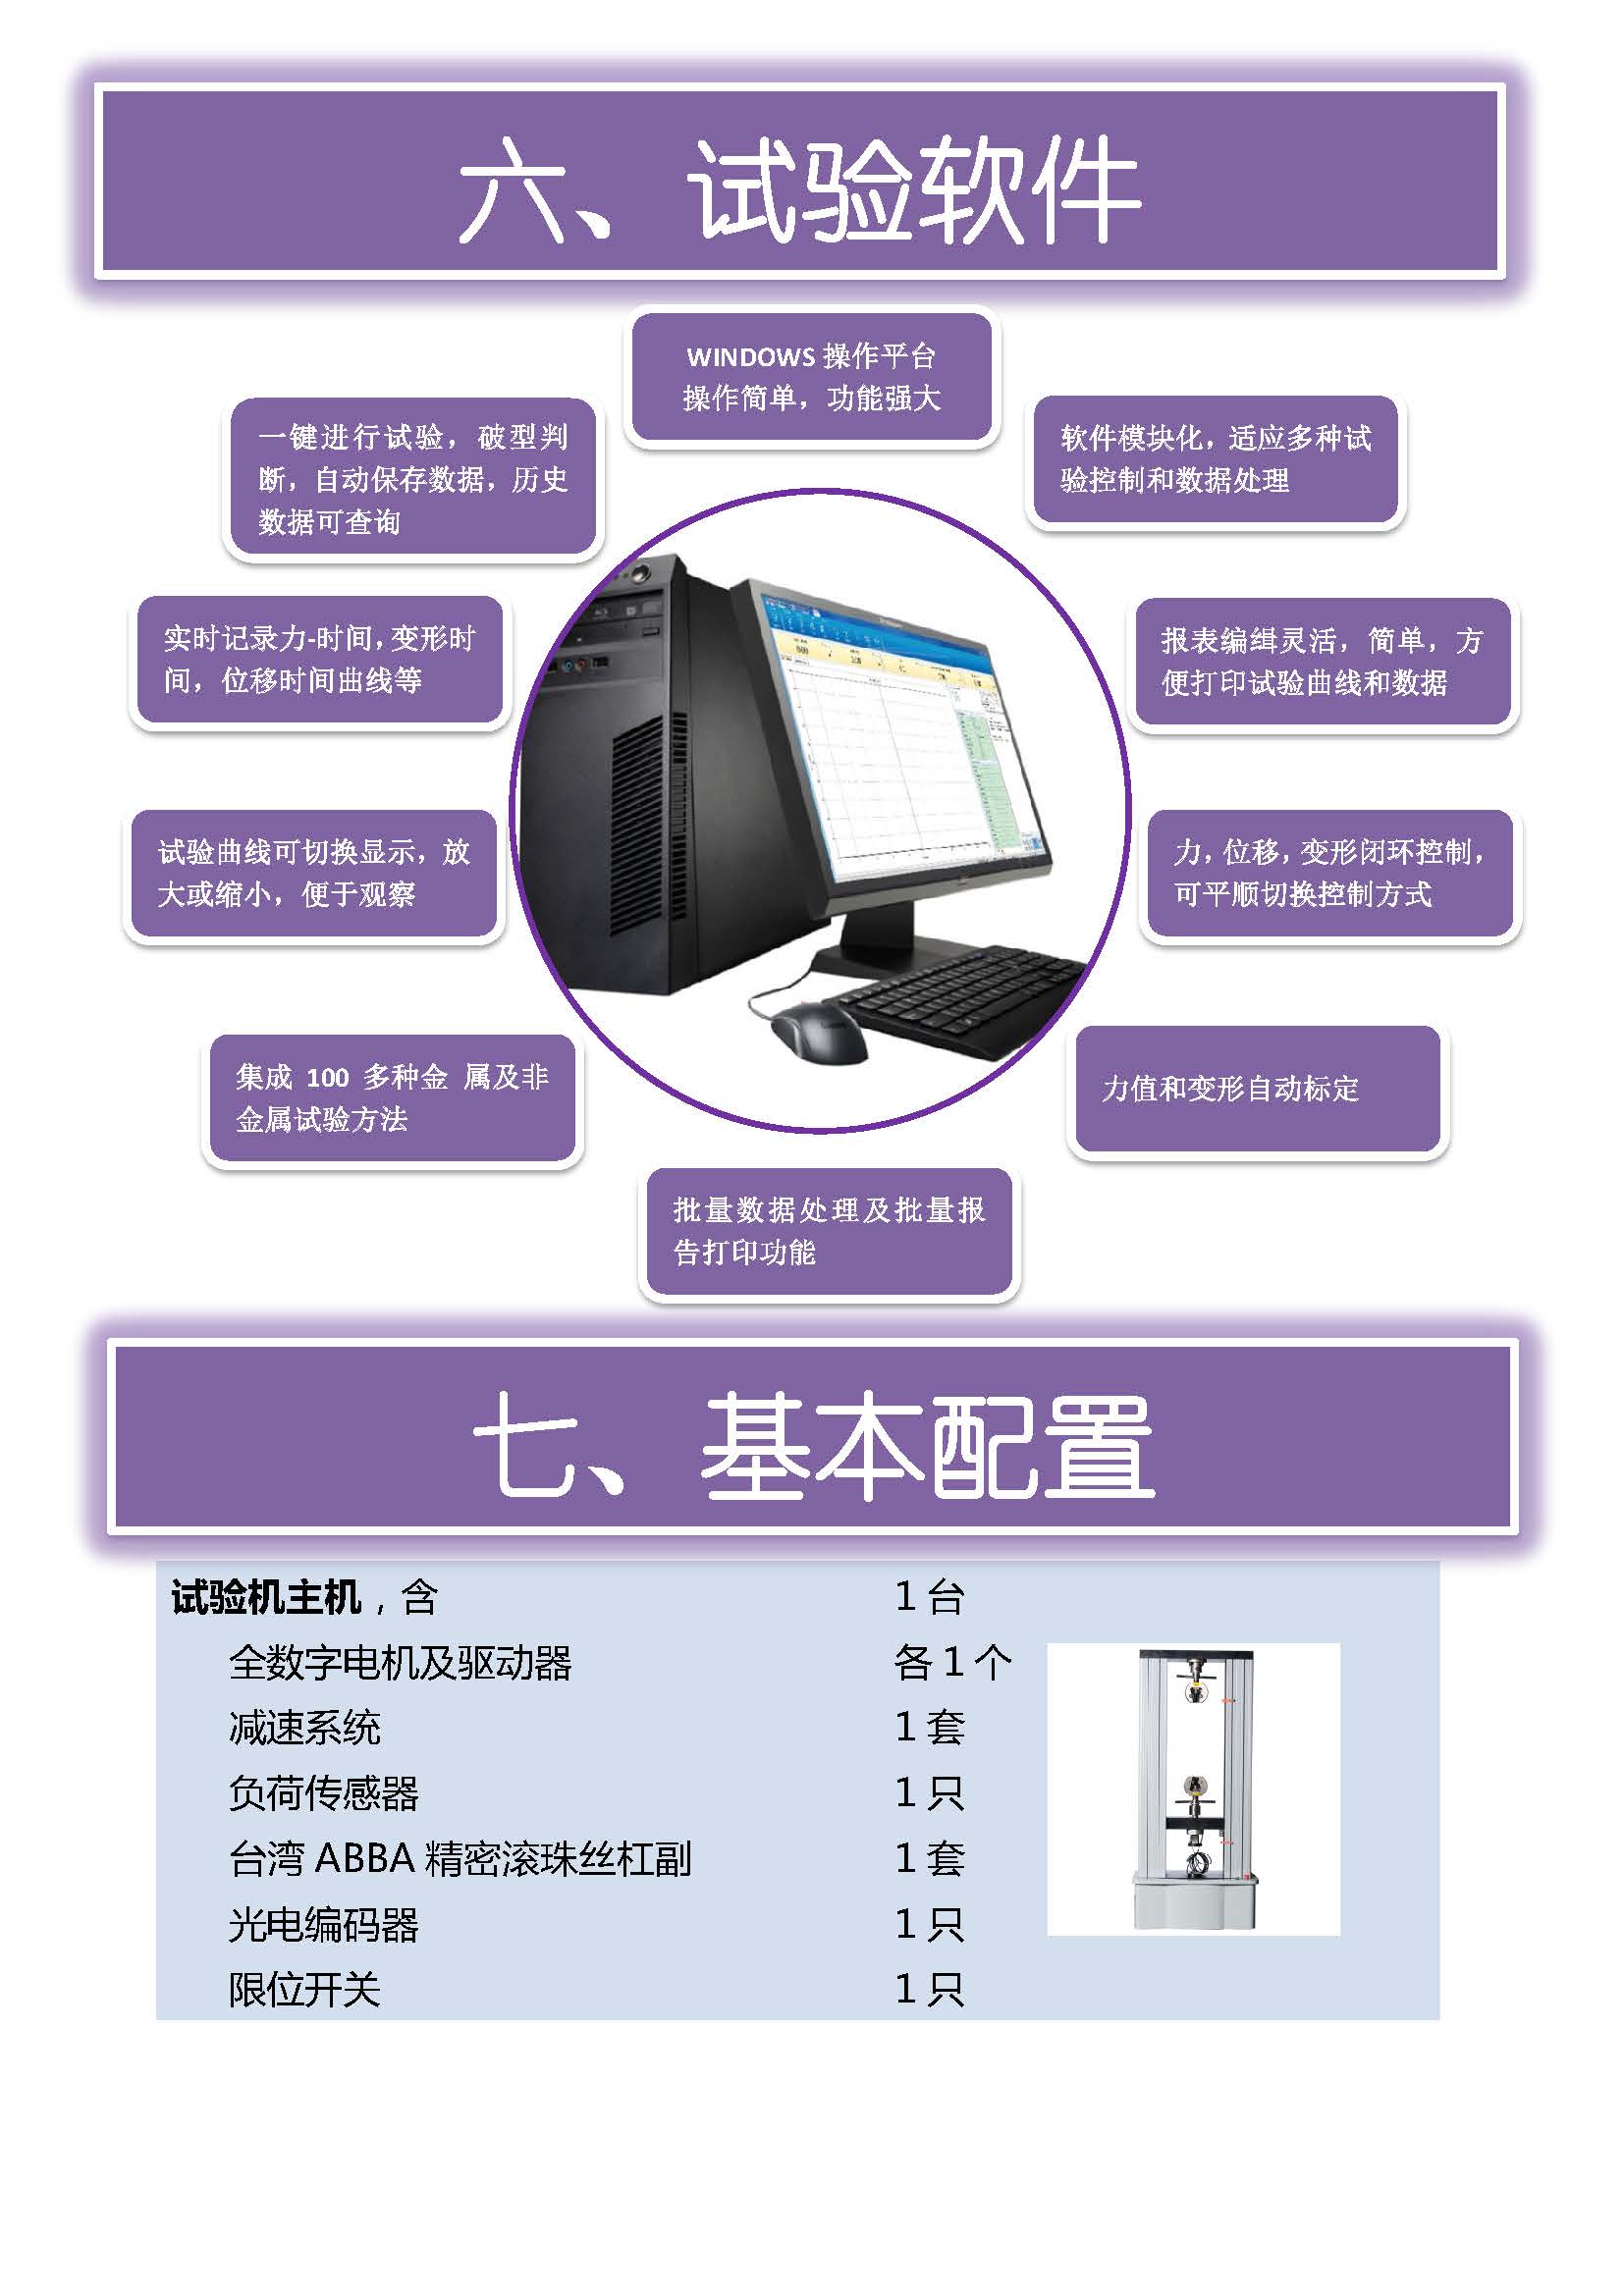 微机门式-国产配置 中文 所有型号_页面_07.jpg